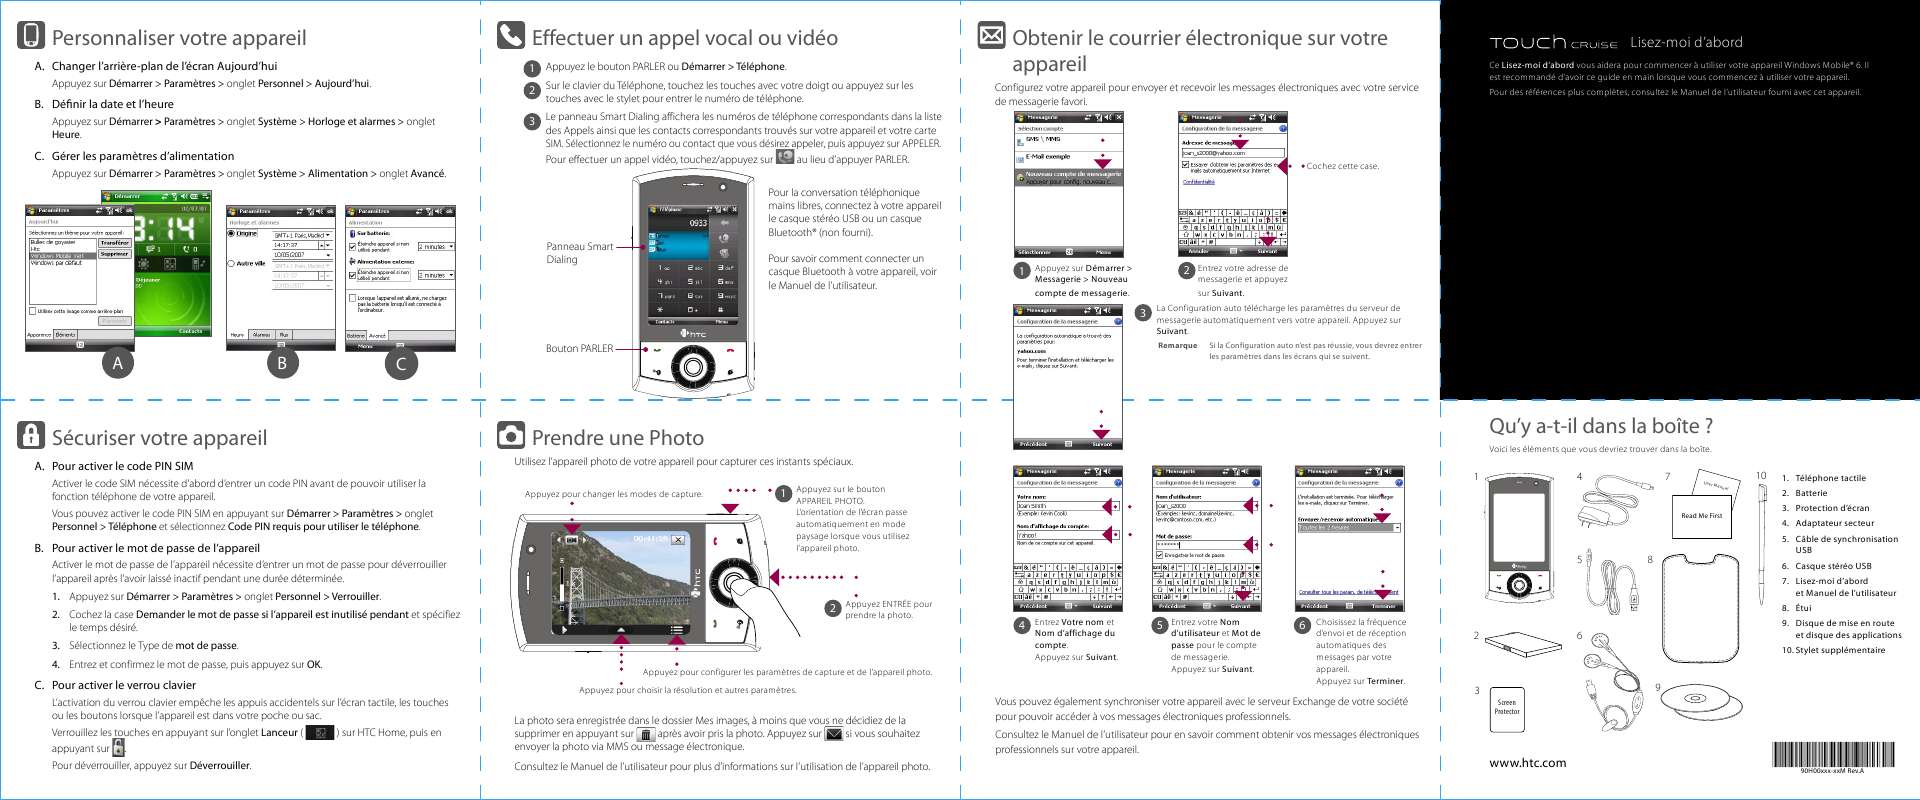 Guide utilisation HTC CRUISE  de la marque HTC